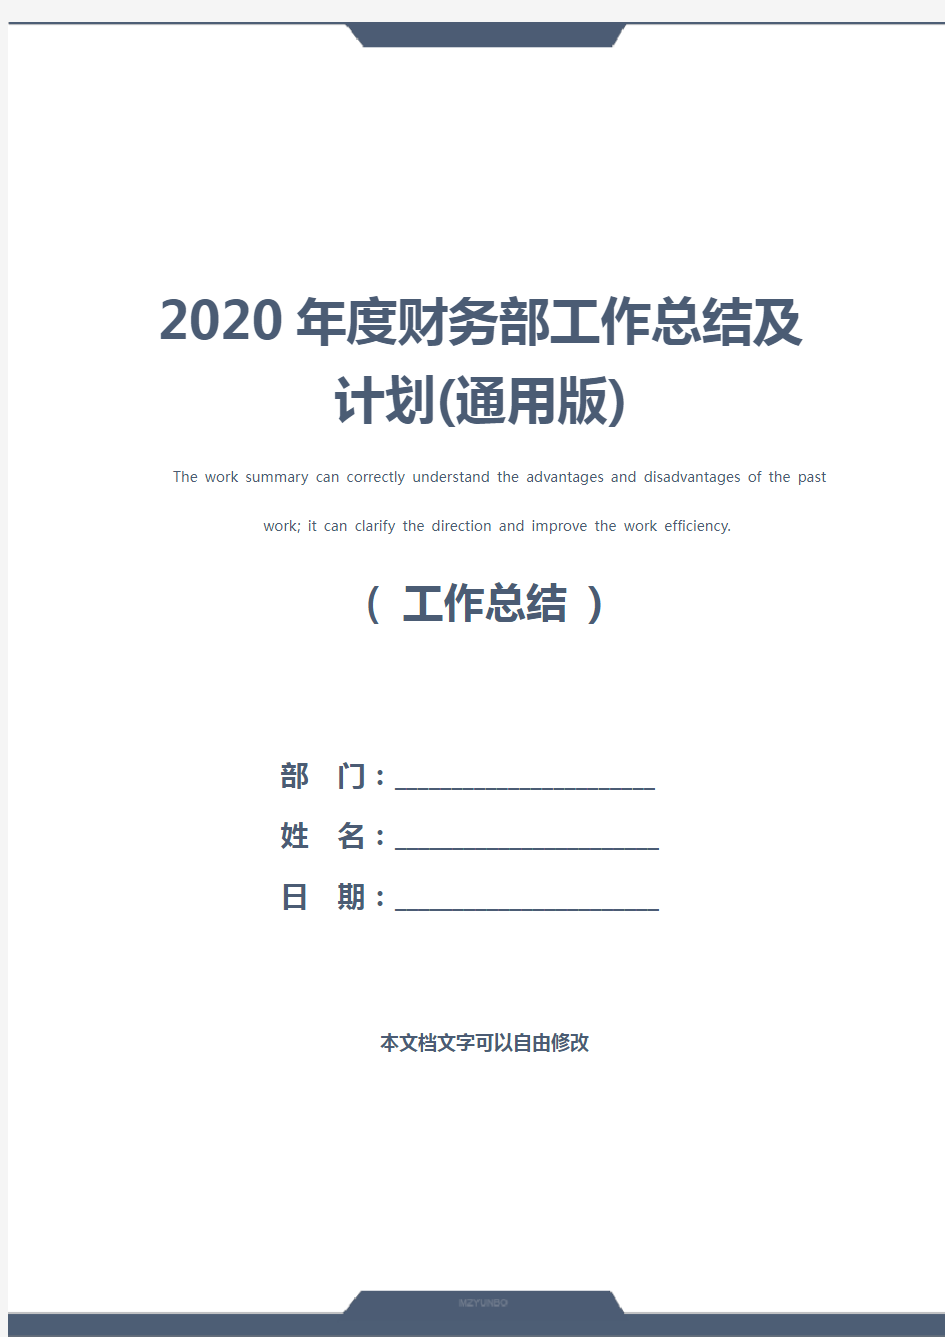 2020年度财务部工作总结及计划(通用版)